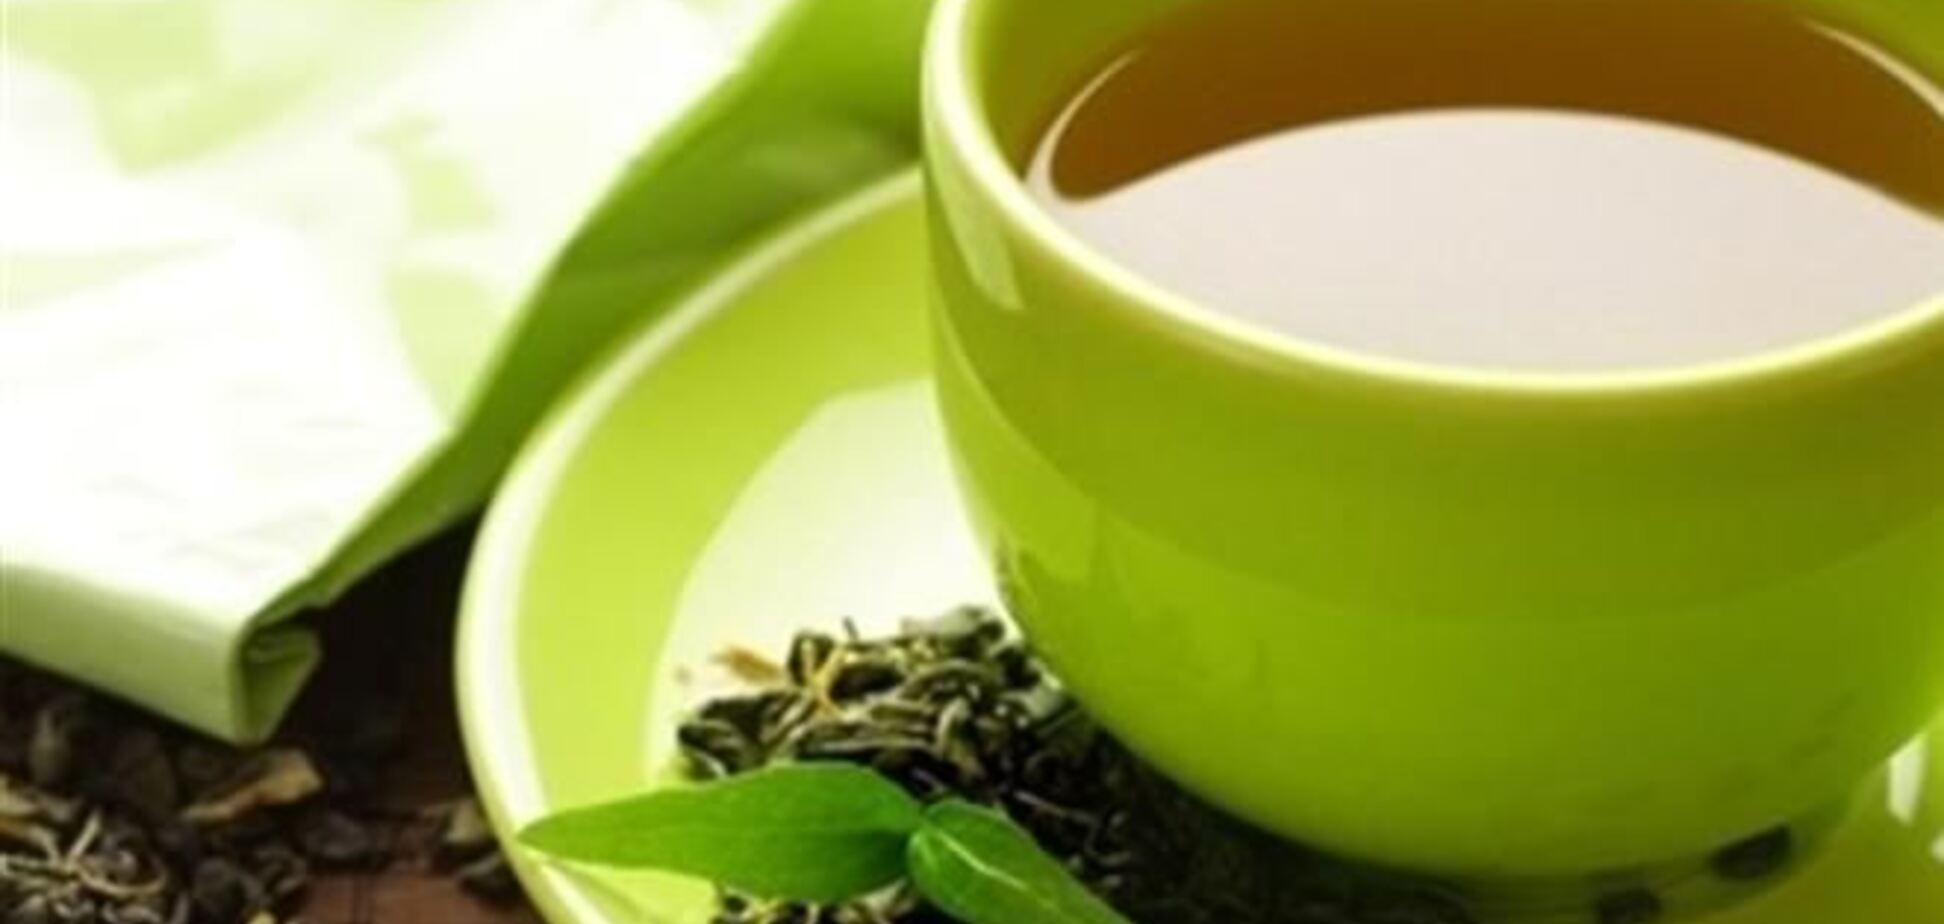 Зеленый чай делает мужчин умнее, а женщинам увеличивает грудь